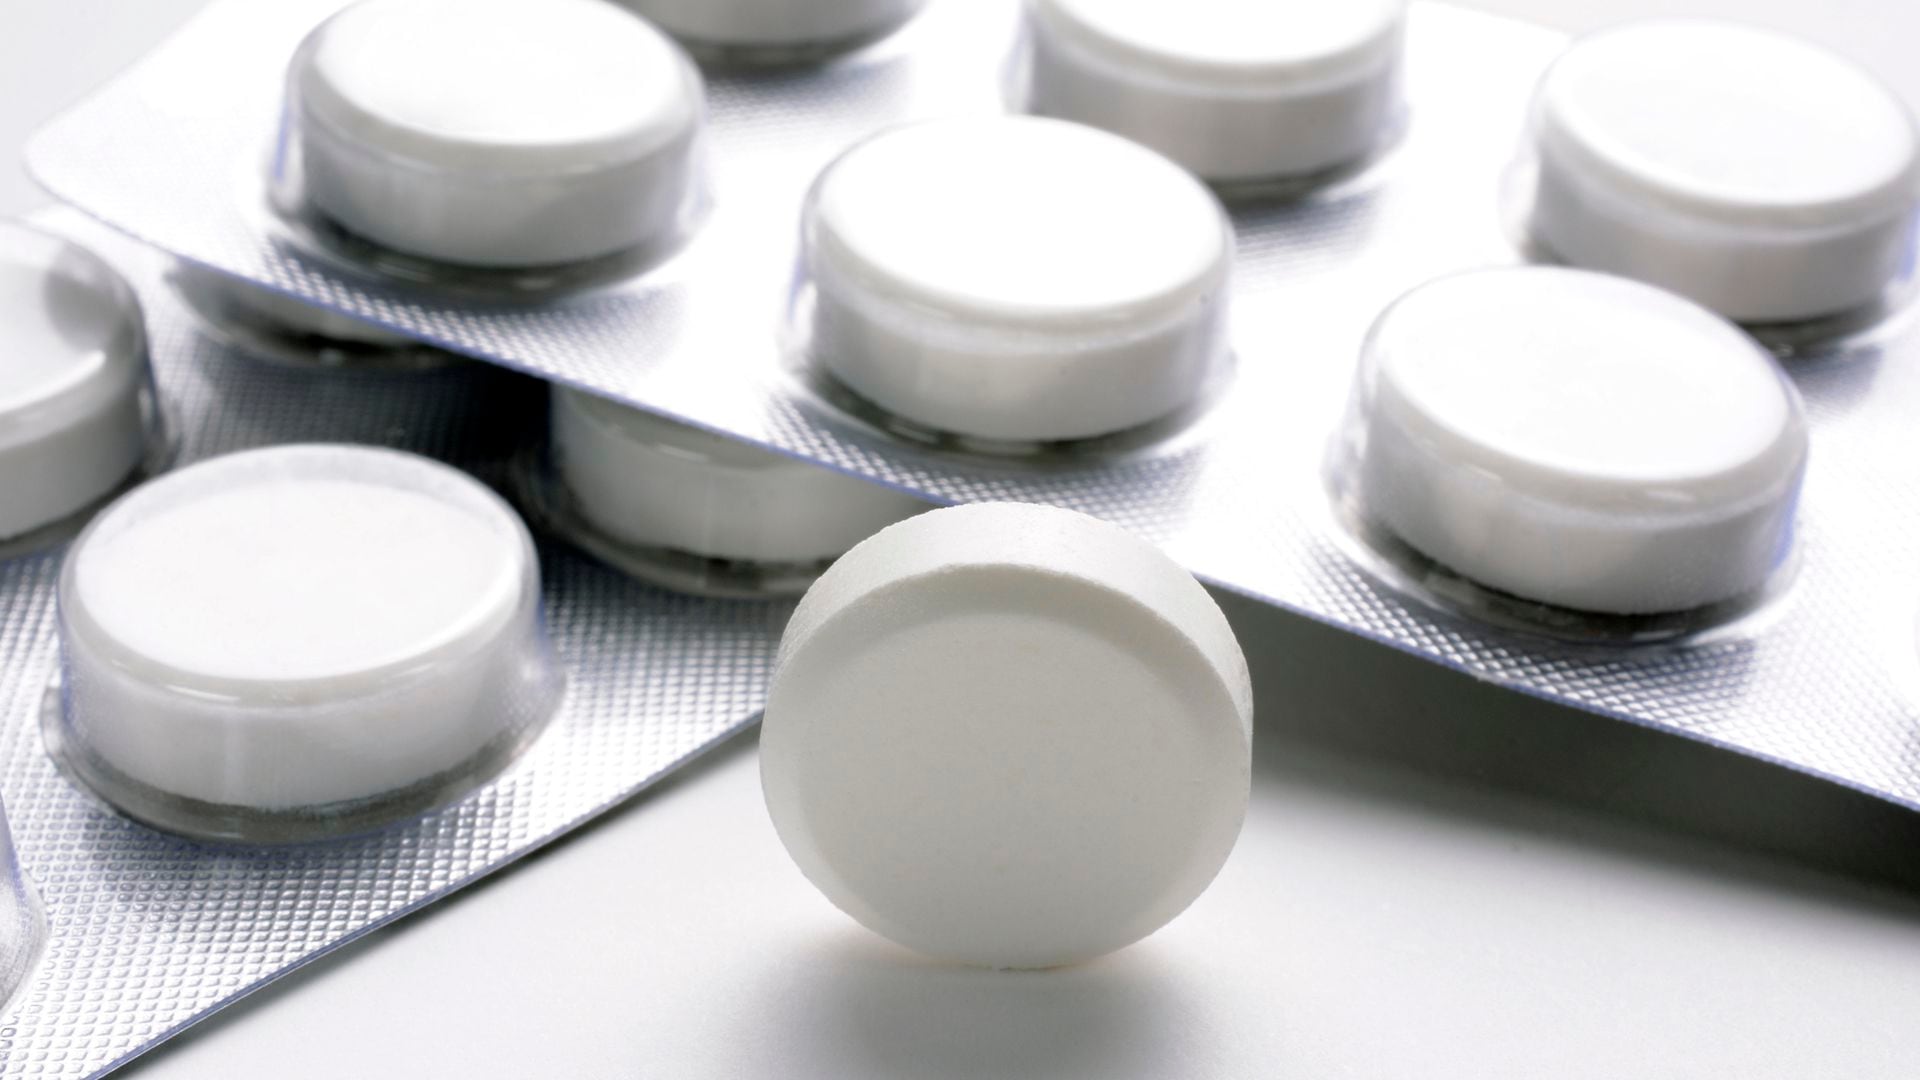 Medicamentos como el paracetamol se pueden consumir cuando hay fiebre. Si hay dudas, hay que consultar al profesional de la salud